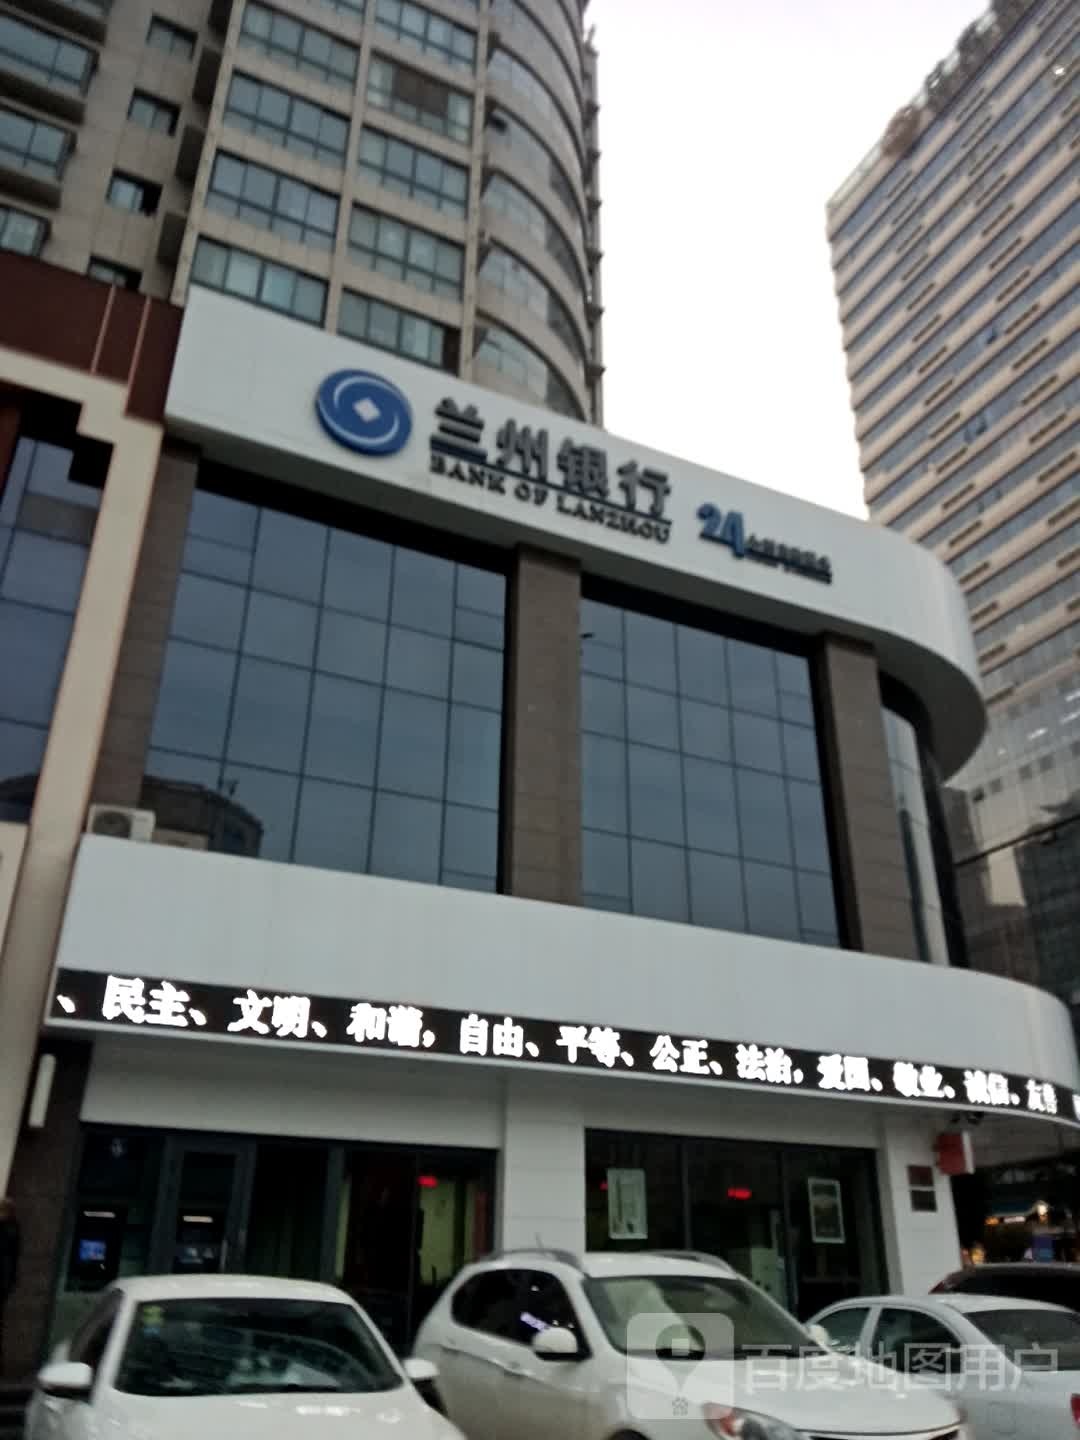 兰州银行24小时自助l银行(庆阳新区支行)